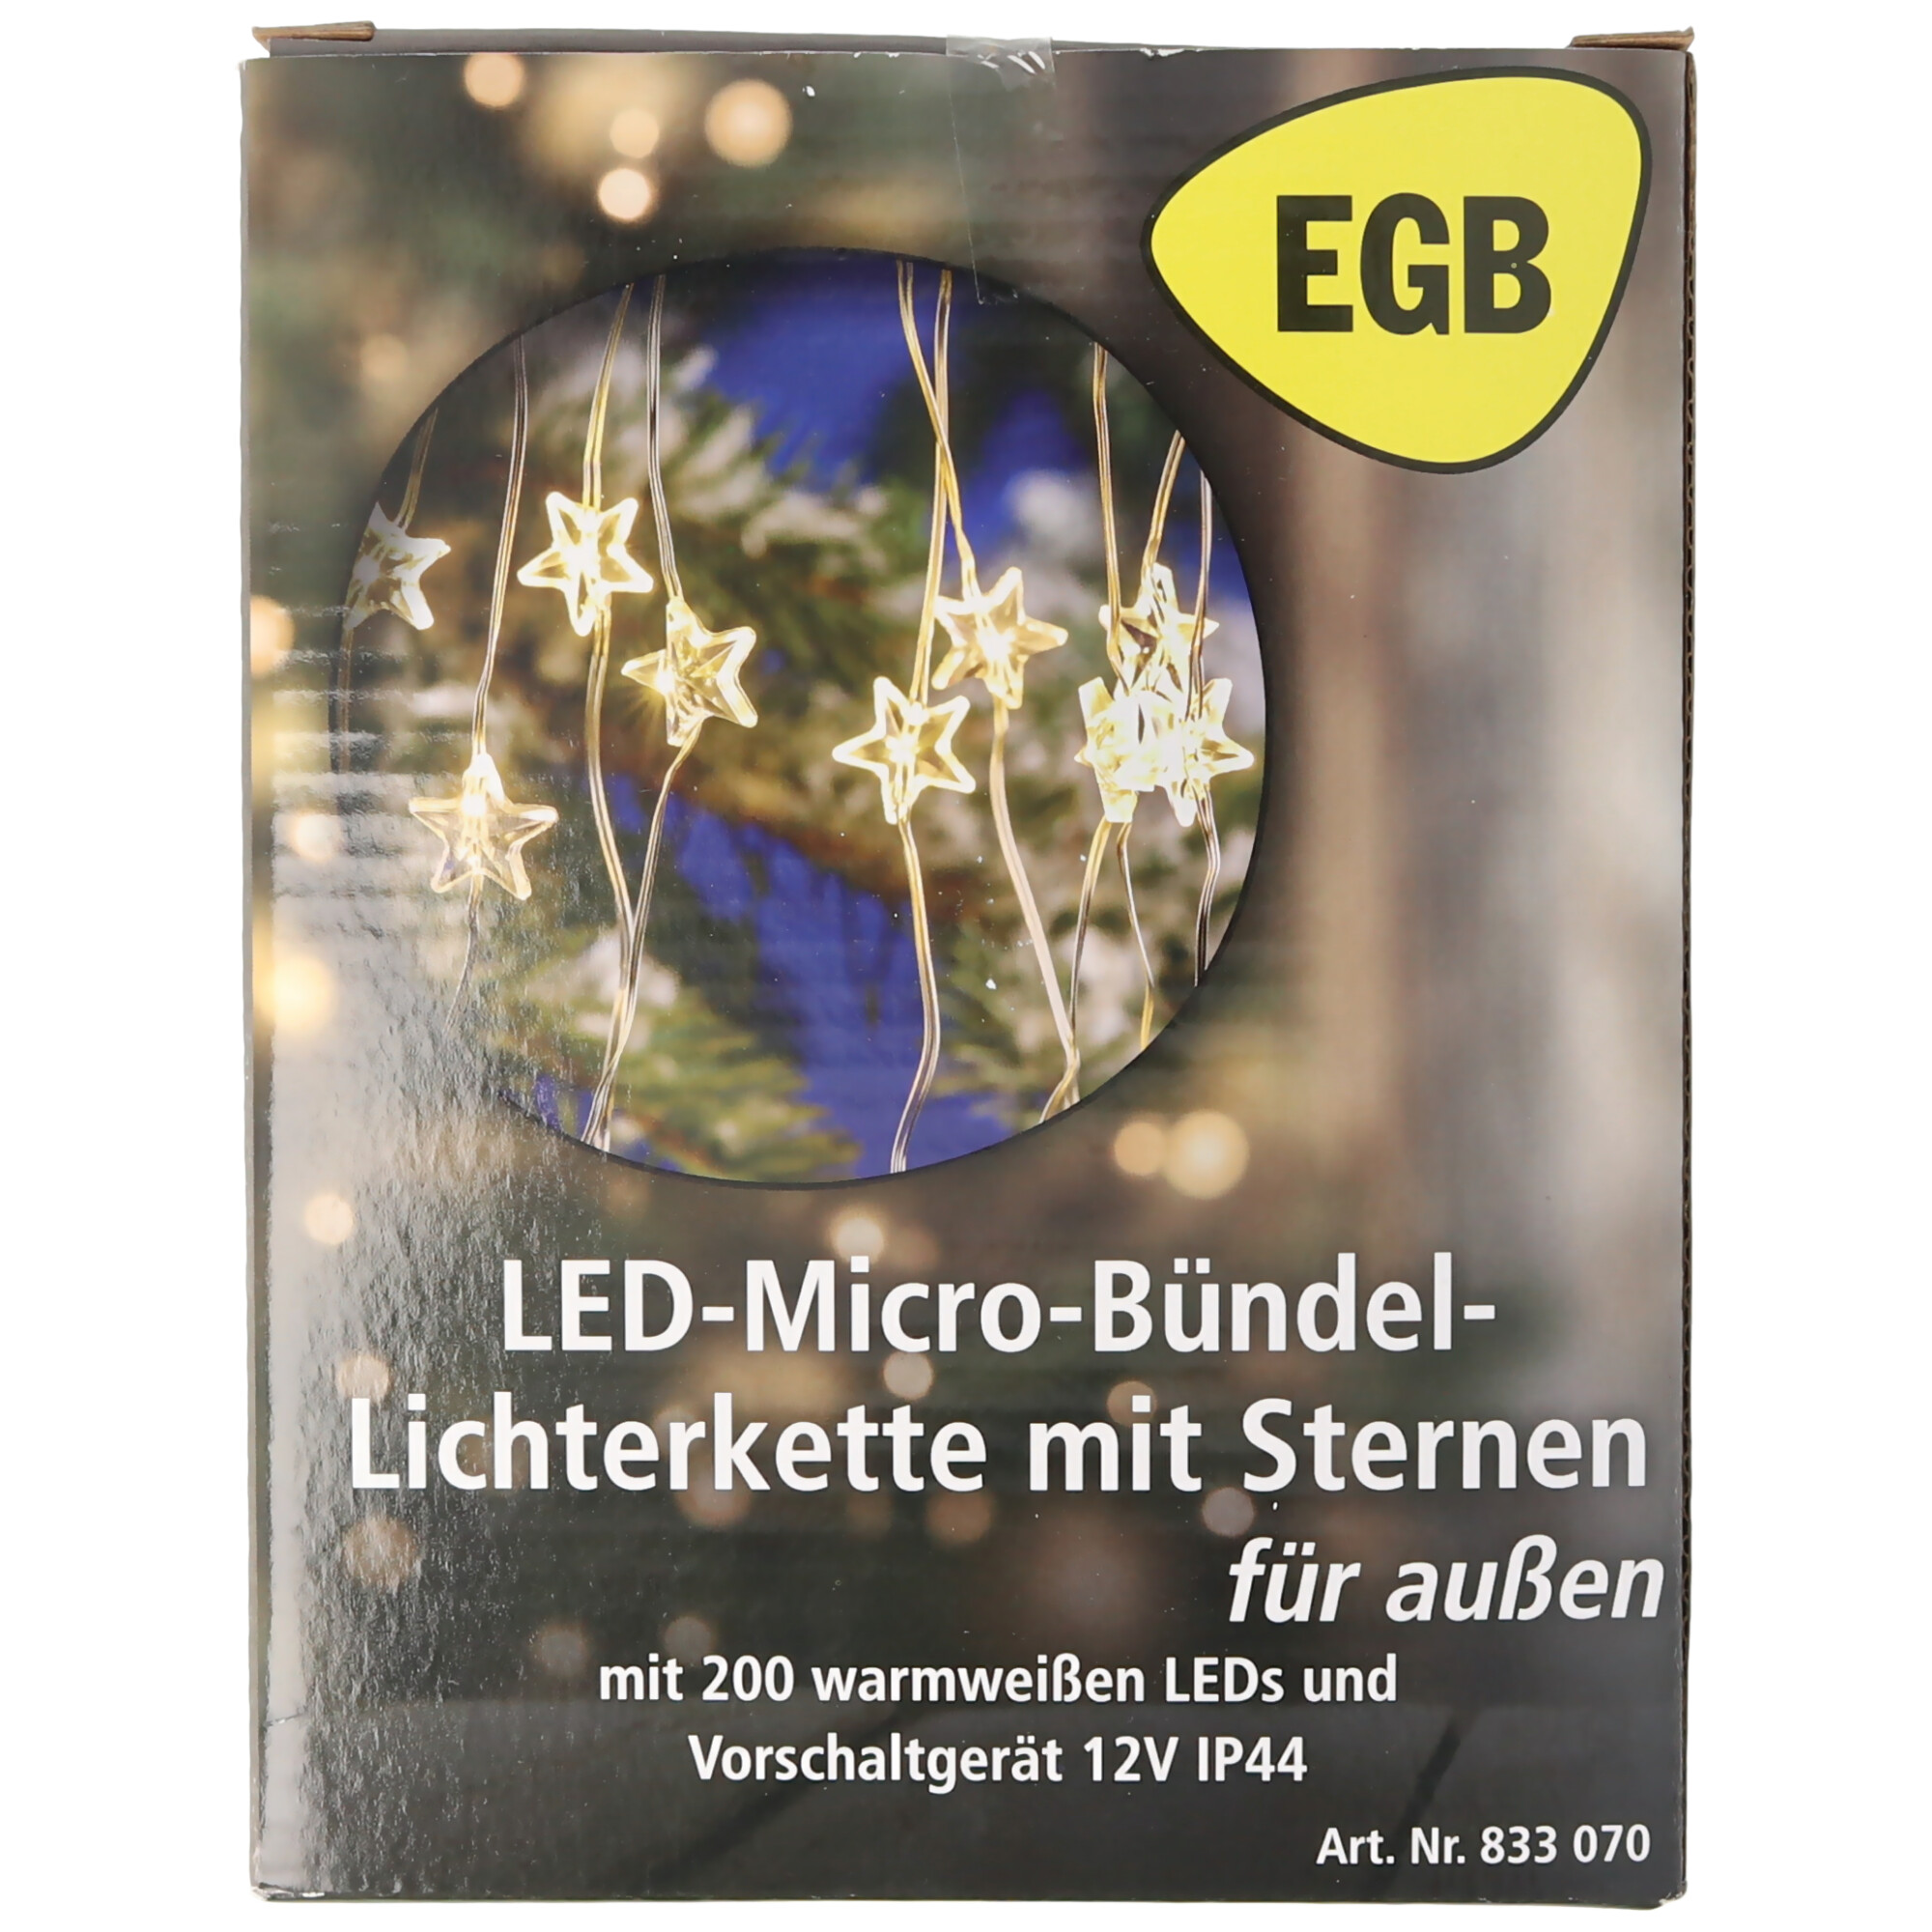 EGB LED-Micro-Bündel-Lichterkette mit Sternen 200 ww LED 10 Stränge 4027236043423